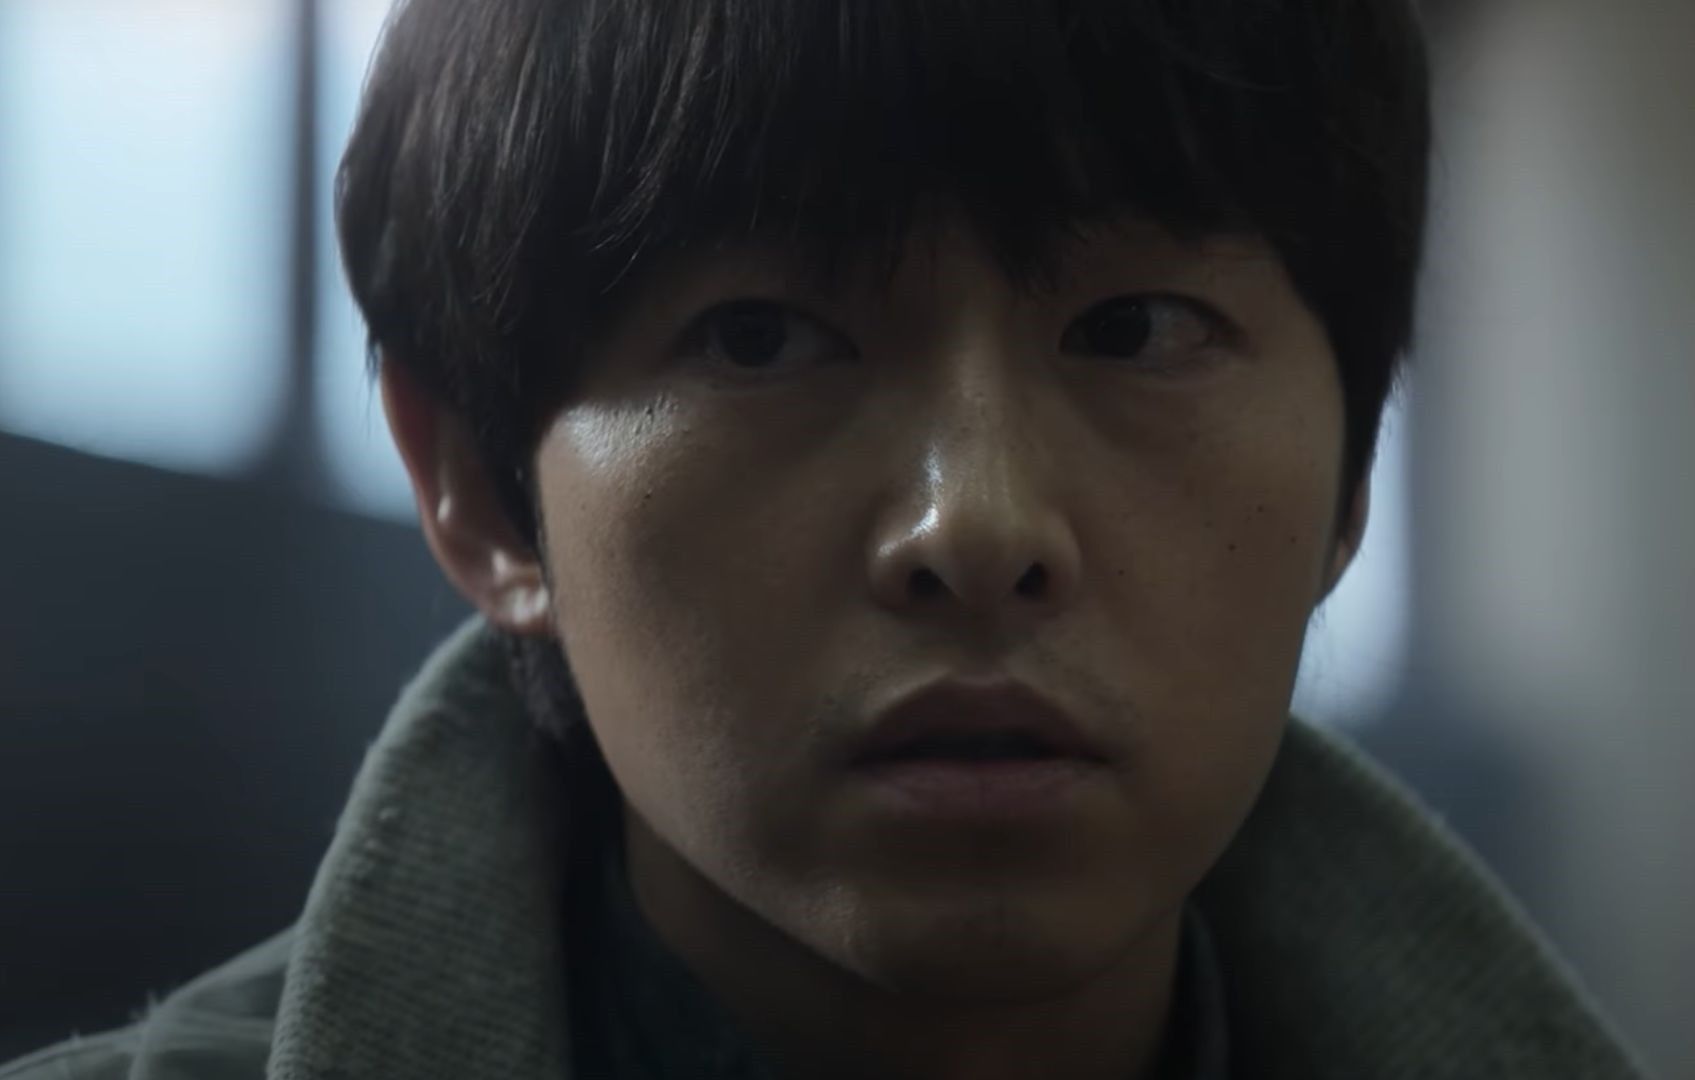 Song Joong Ki is a North Korea defector in 'My Name is Loh Kiwan' teaser